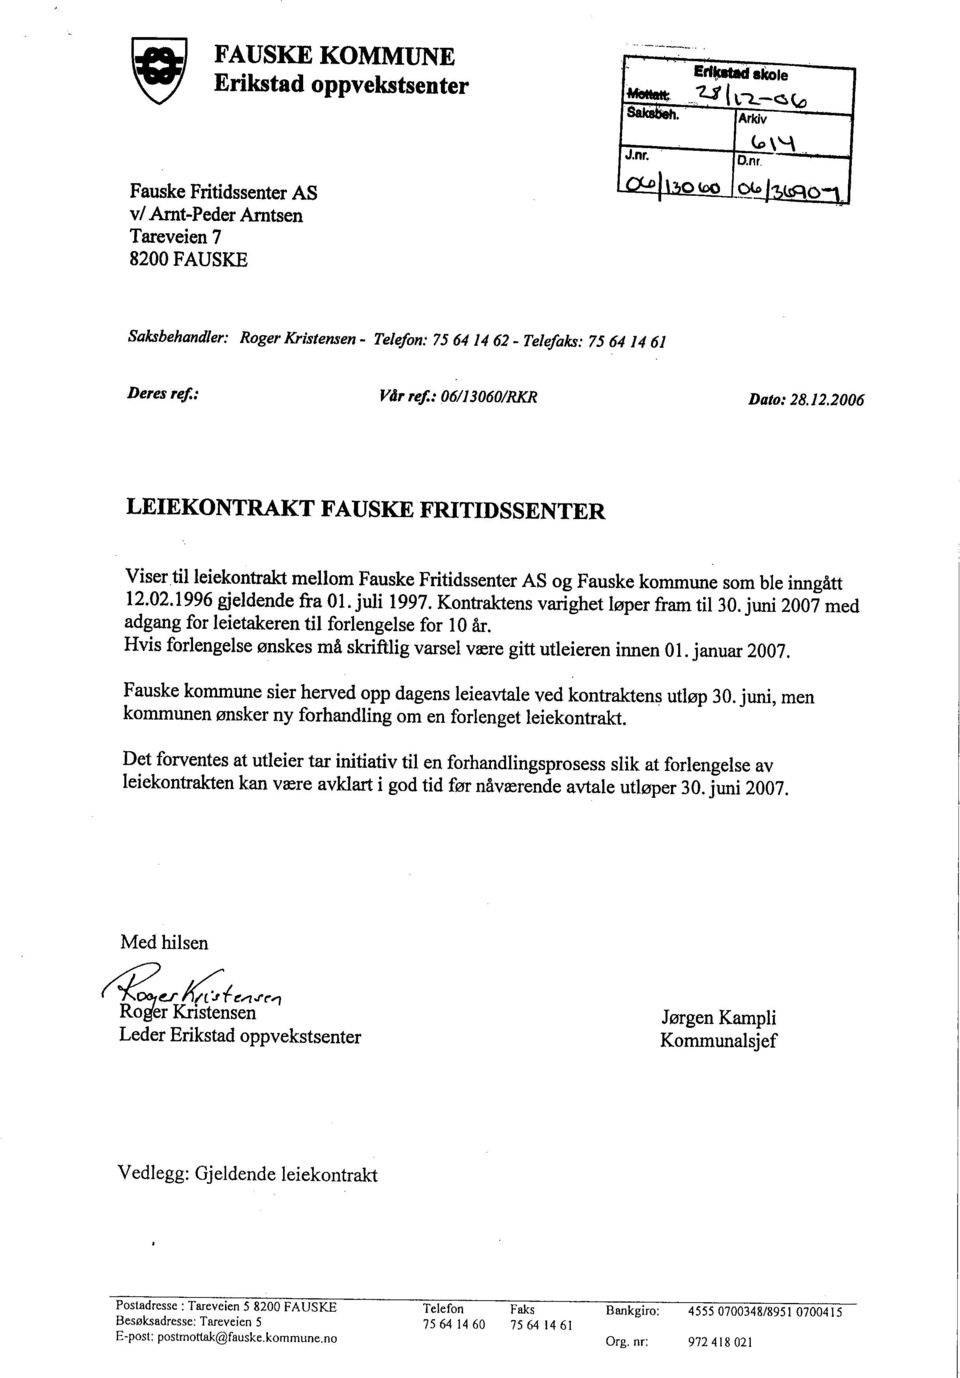 2006 LEIEKONTRAKT FAUSKE FRITIDSSENTER Visertil leiekontrak mellom og Fauske kommune som ble inngått 12.02.1996 gjeldende fra 01. juli 1997. Kontrakens varghet løper fram til 30.